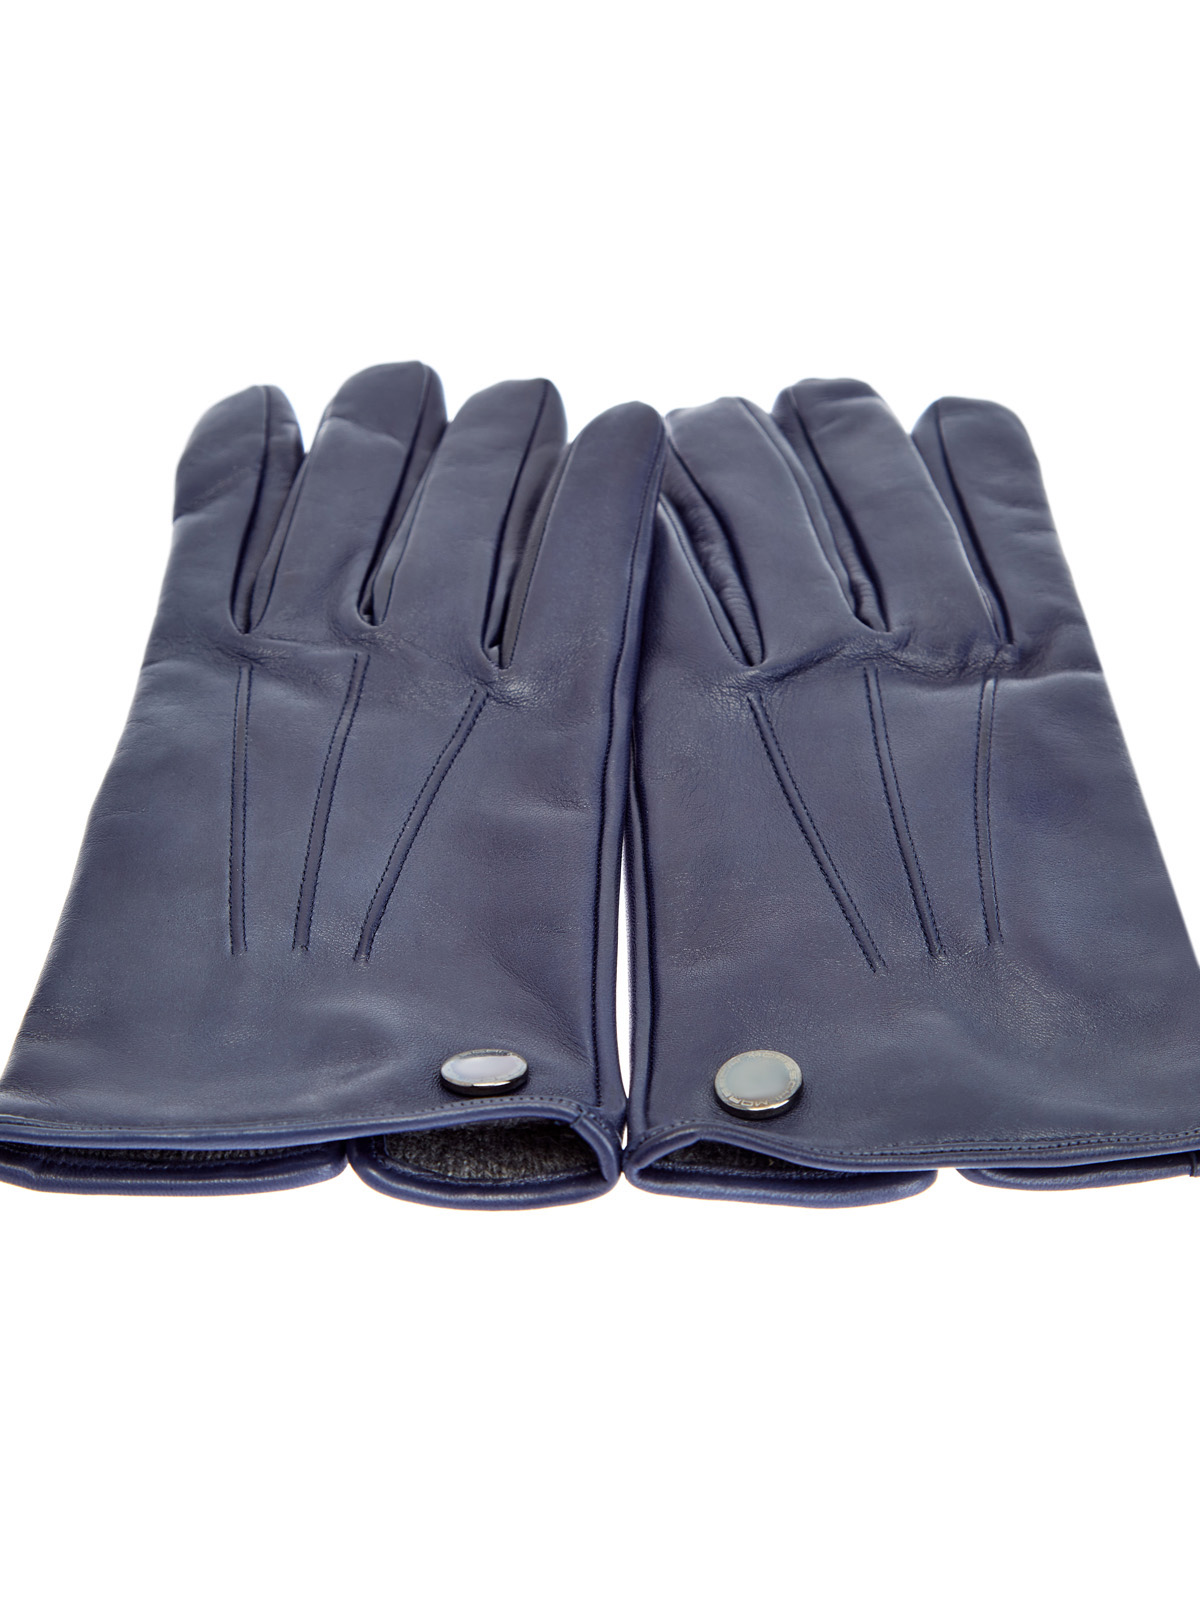 Перчатки из кожи наппа с литой фурнитурой MORESCHI, цвет синий, размер L;S;M - фото 2